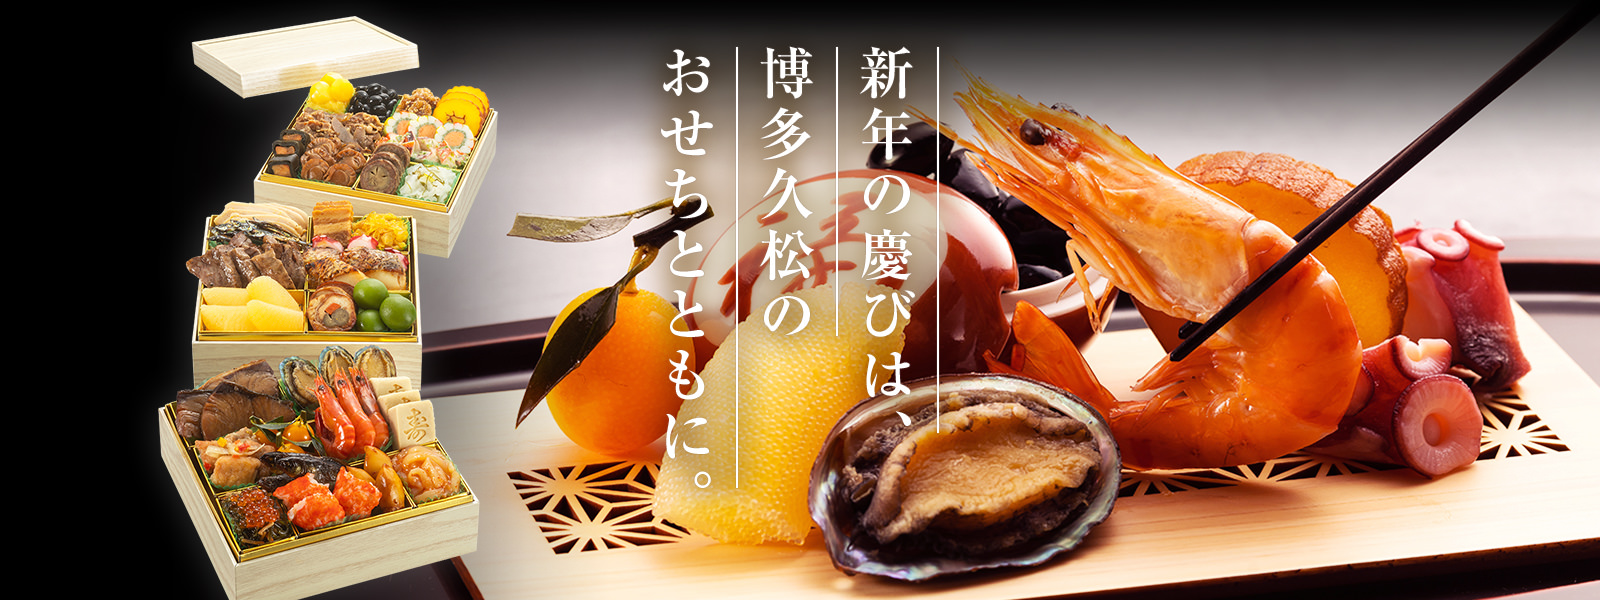 新年の慶びは、博多久松のおせちとともに